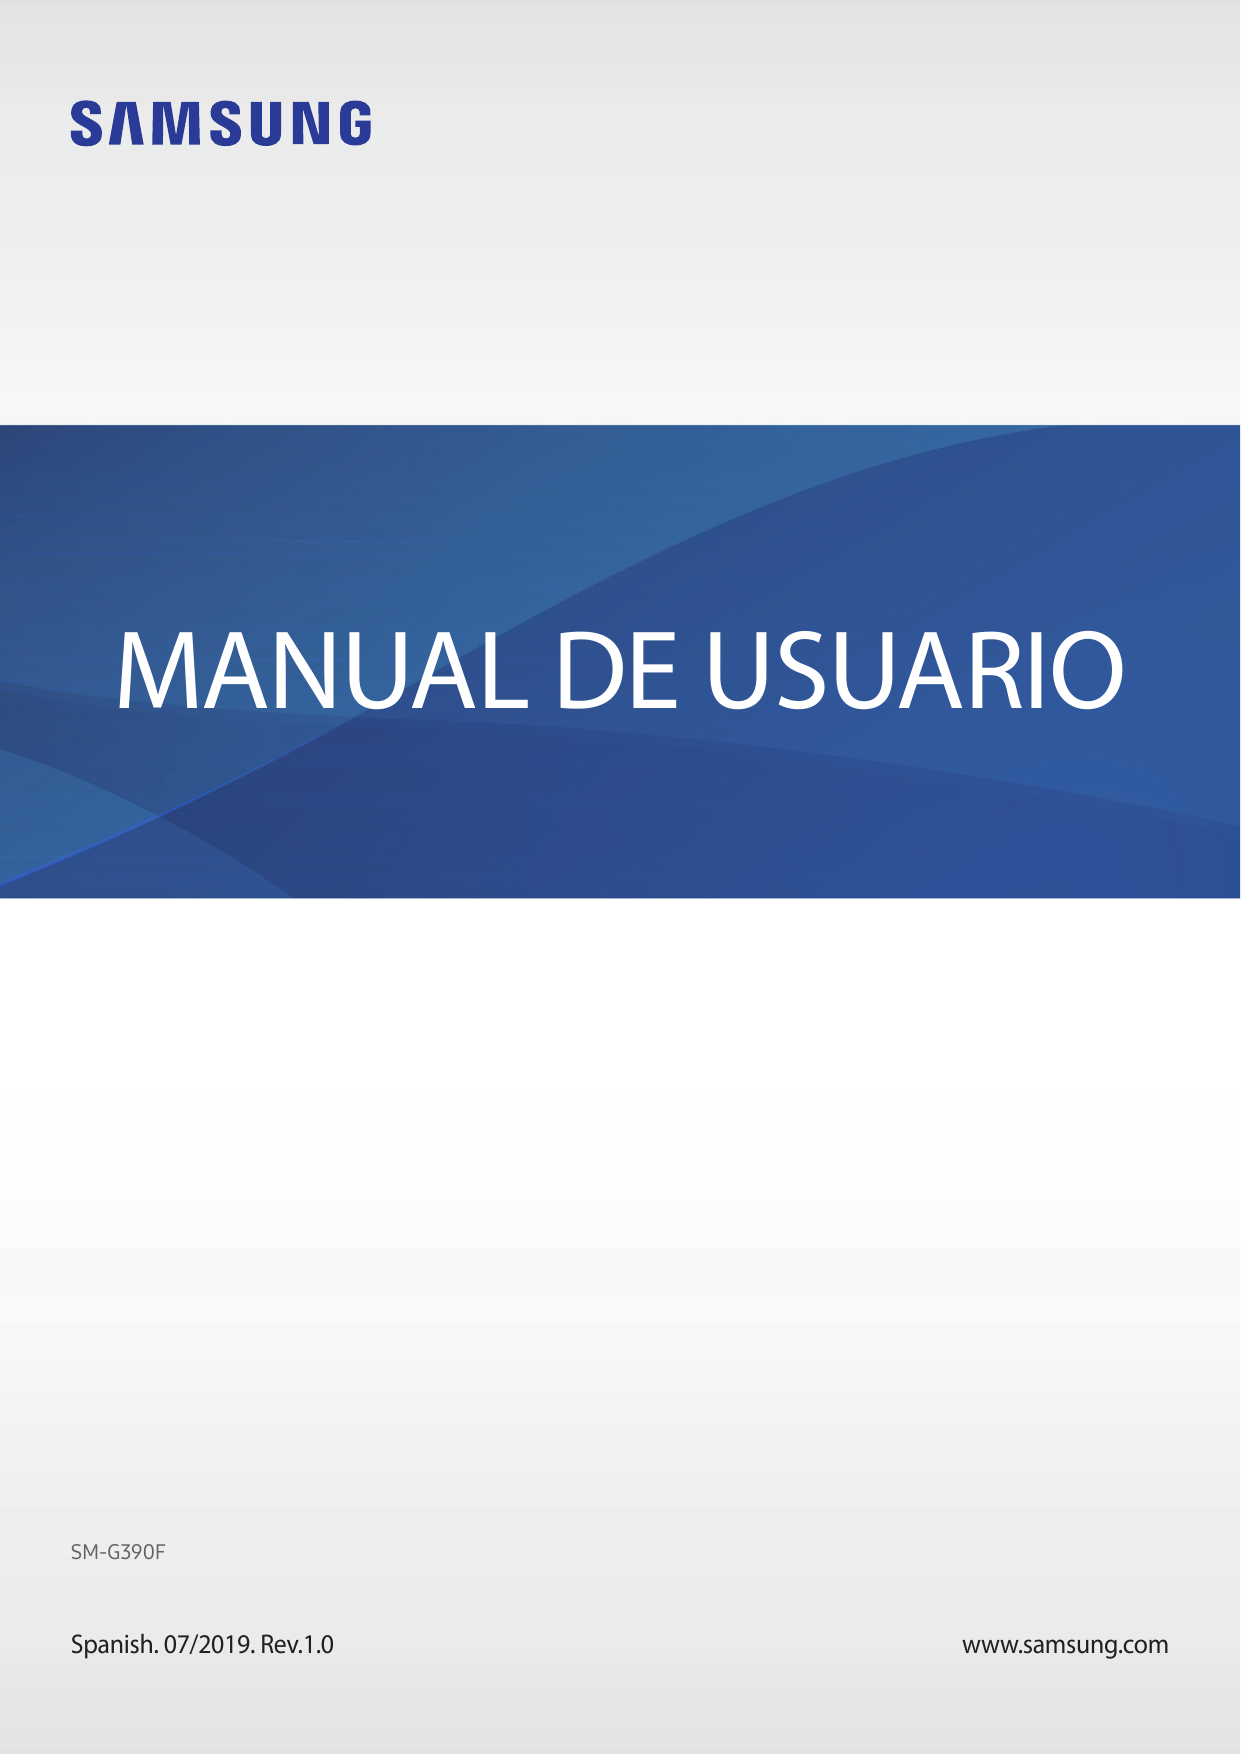 MANUAL DE USUARIOSM-G390FSpanish. 07/2019. Rev.1.0www.samsung.com